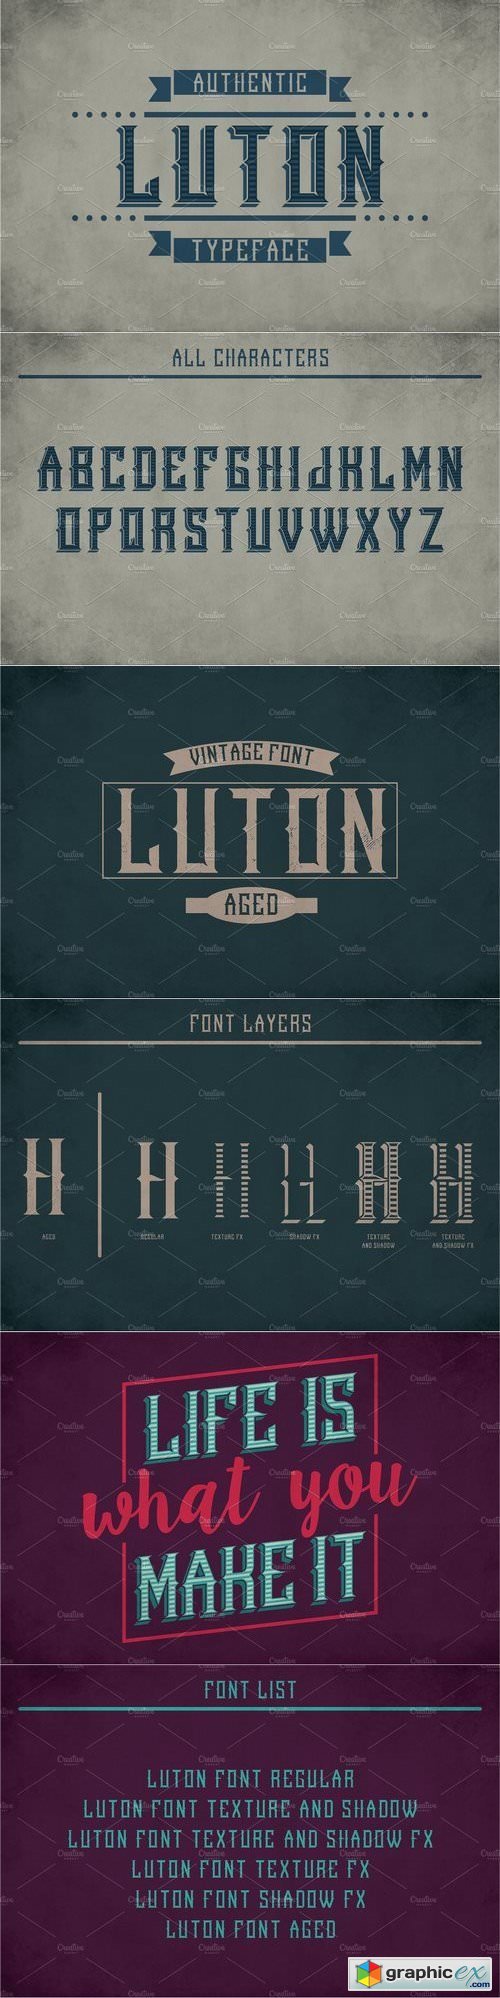 Luton Vintage Label Typeface